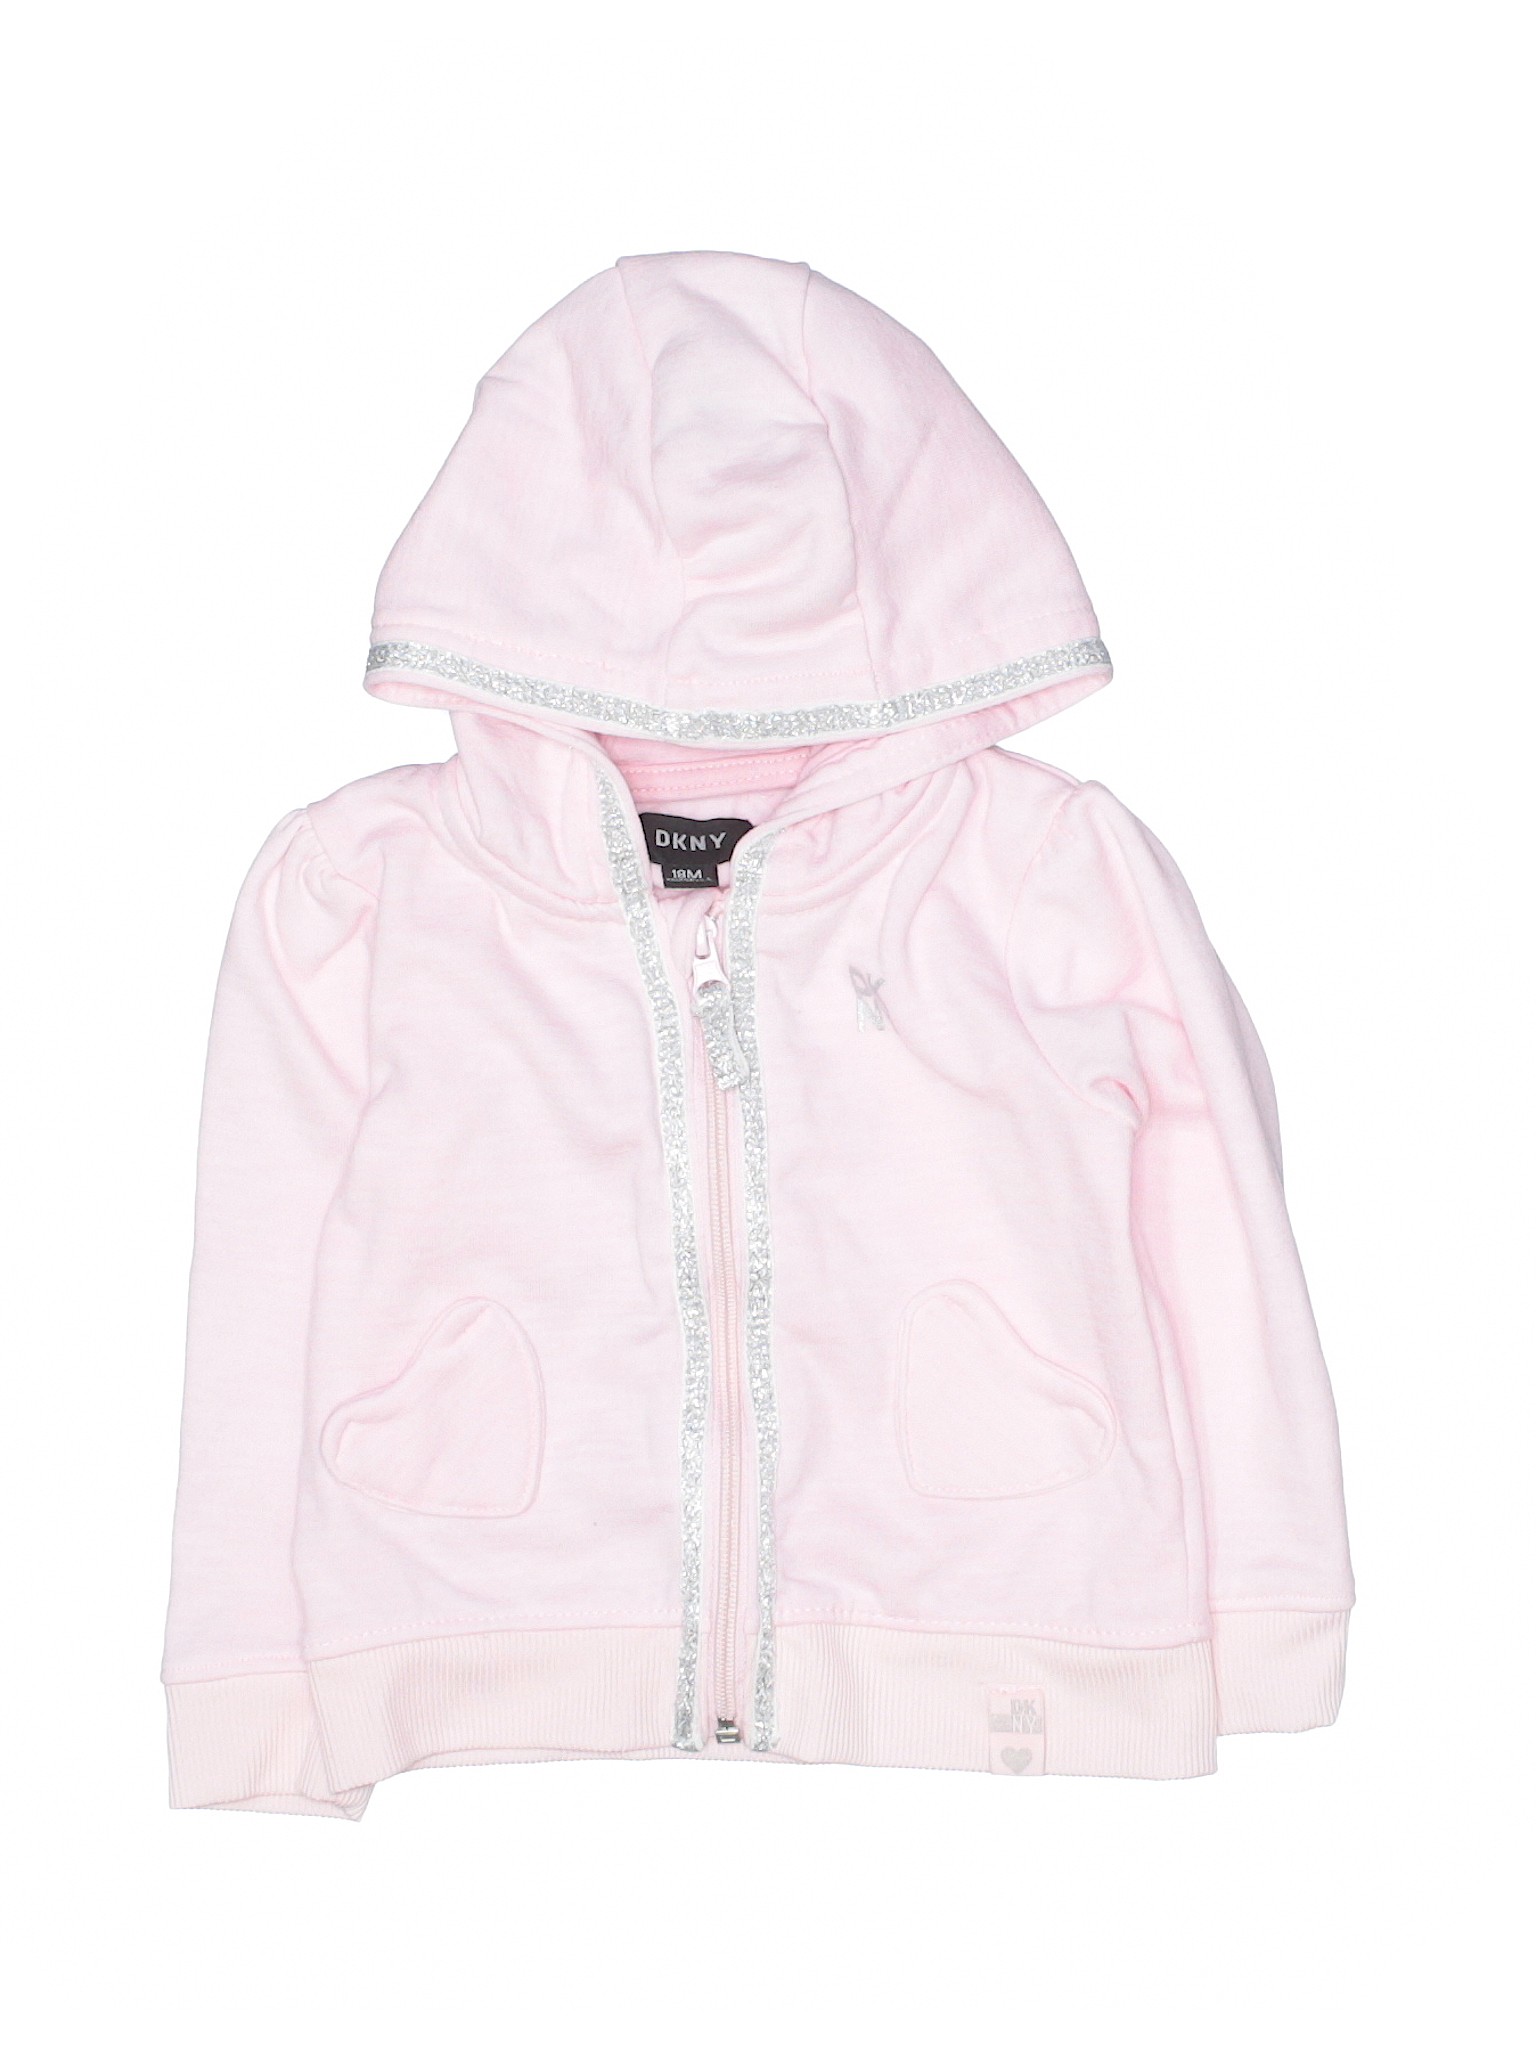 DKNY Girls Pink Zip Up Hoodie 18 Months | eBay